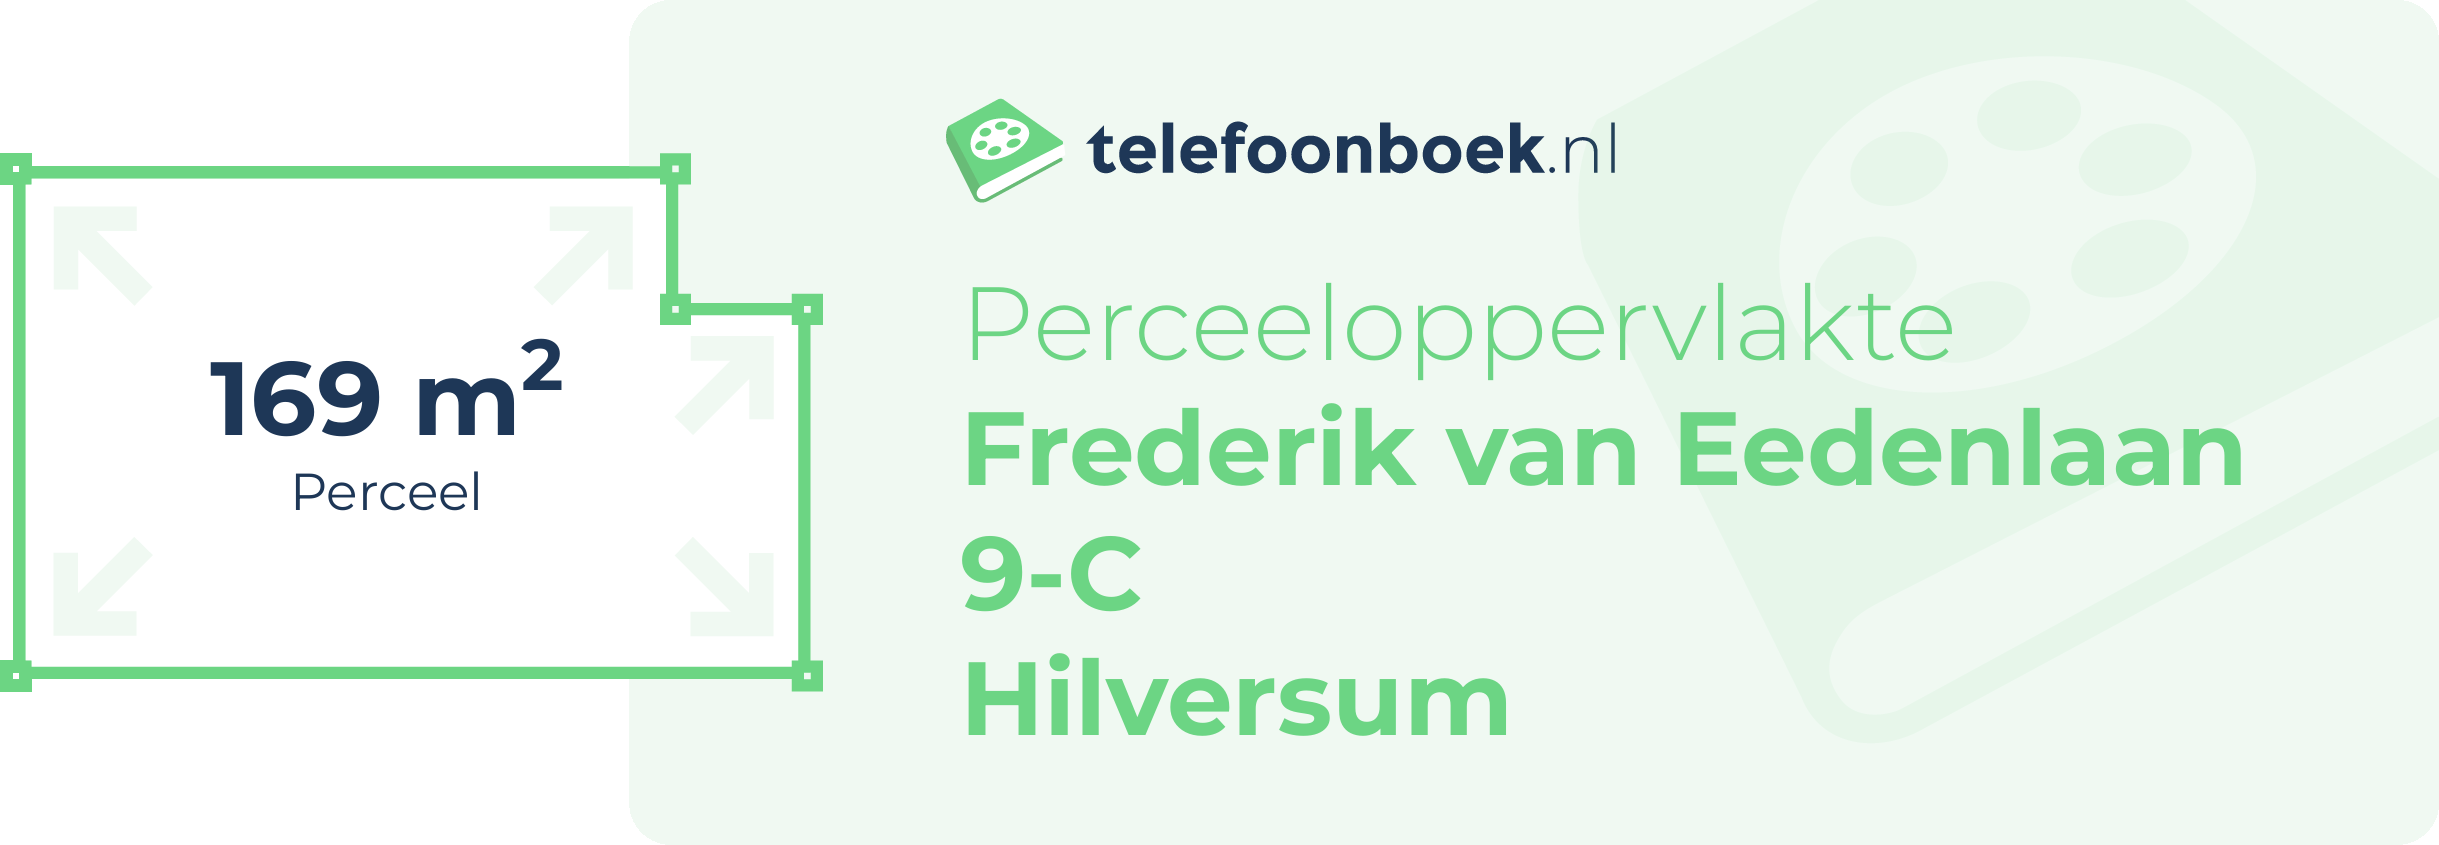 Perceeloppervlakte Frederik Van Eedenlaan 9-C Hilversum